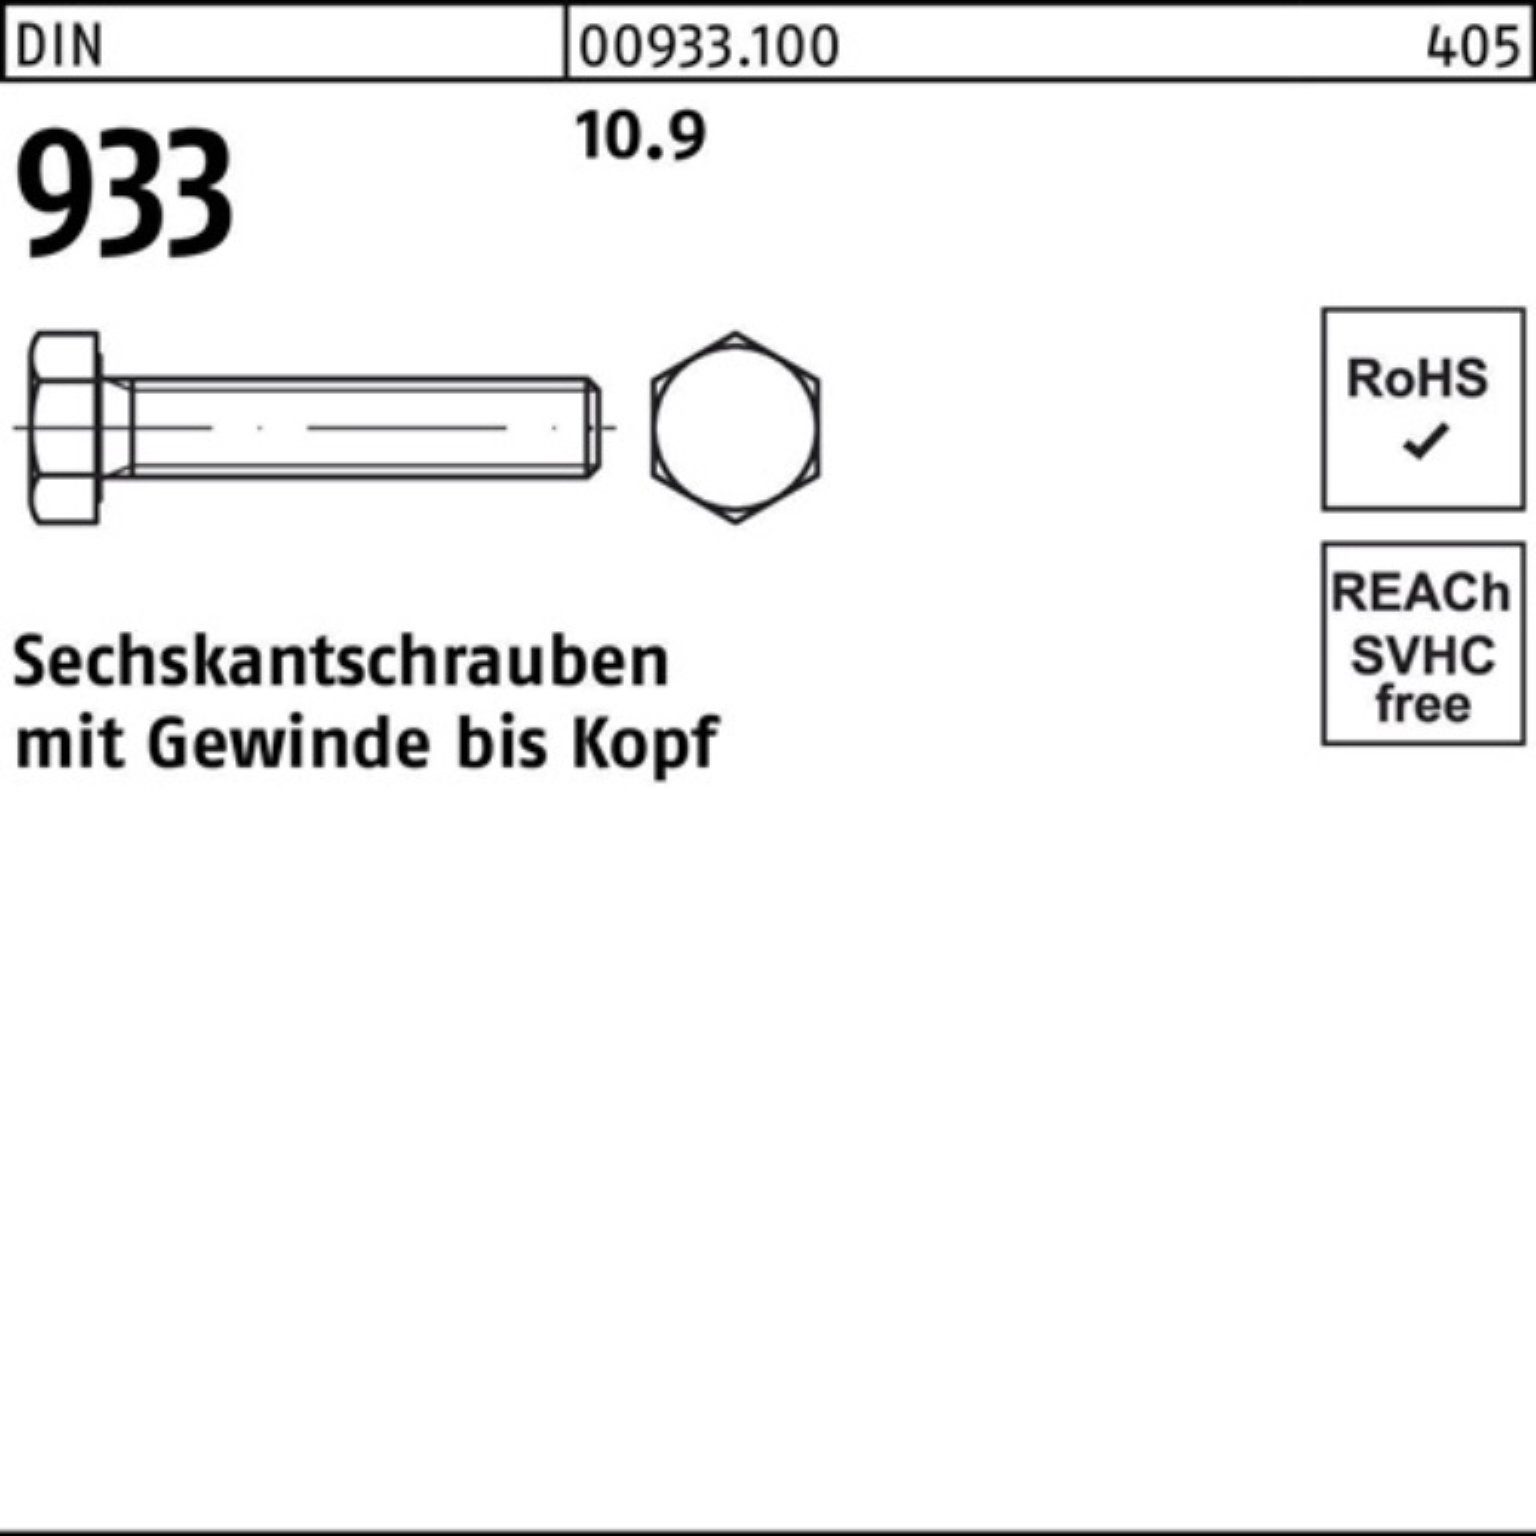 Reyher Sechskantschraube 100er Pack Stück 10 933 VG 933 Sechskantschraube DIN 10.9 DIN 70 M27x